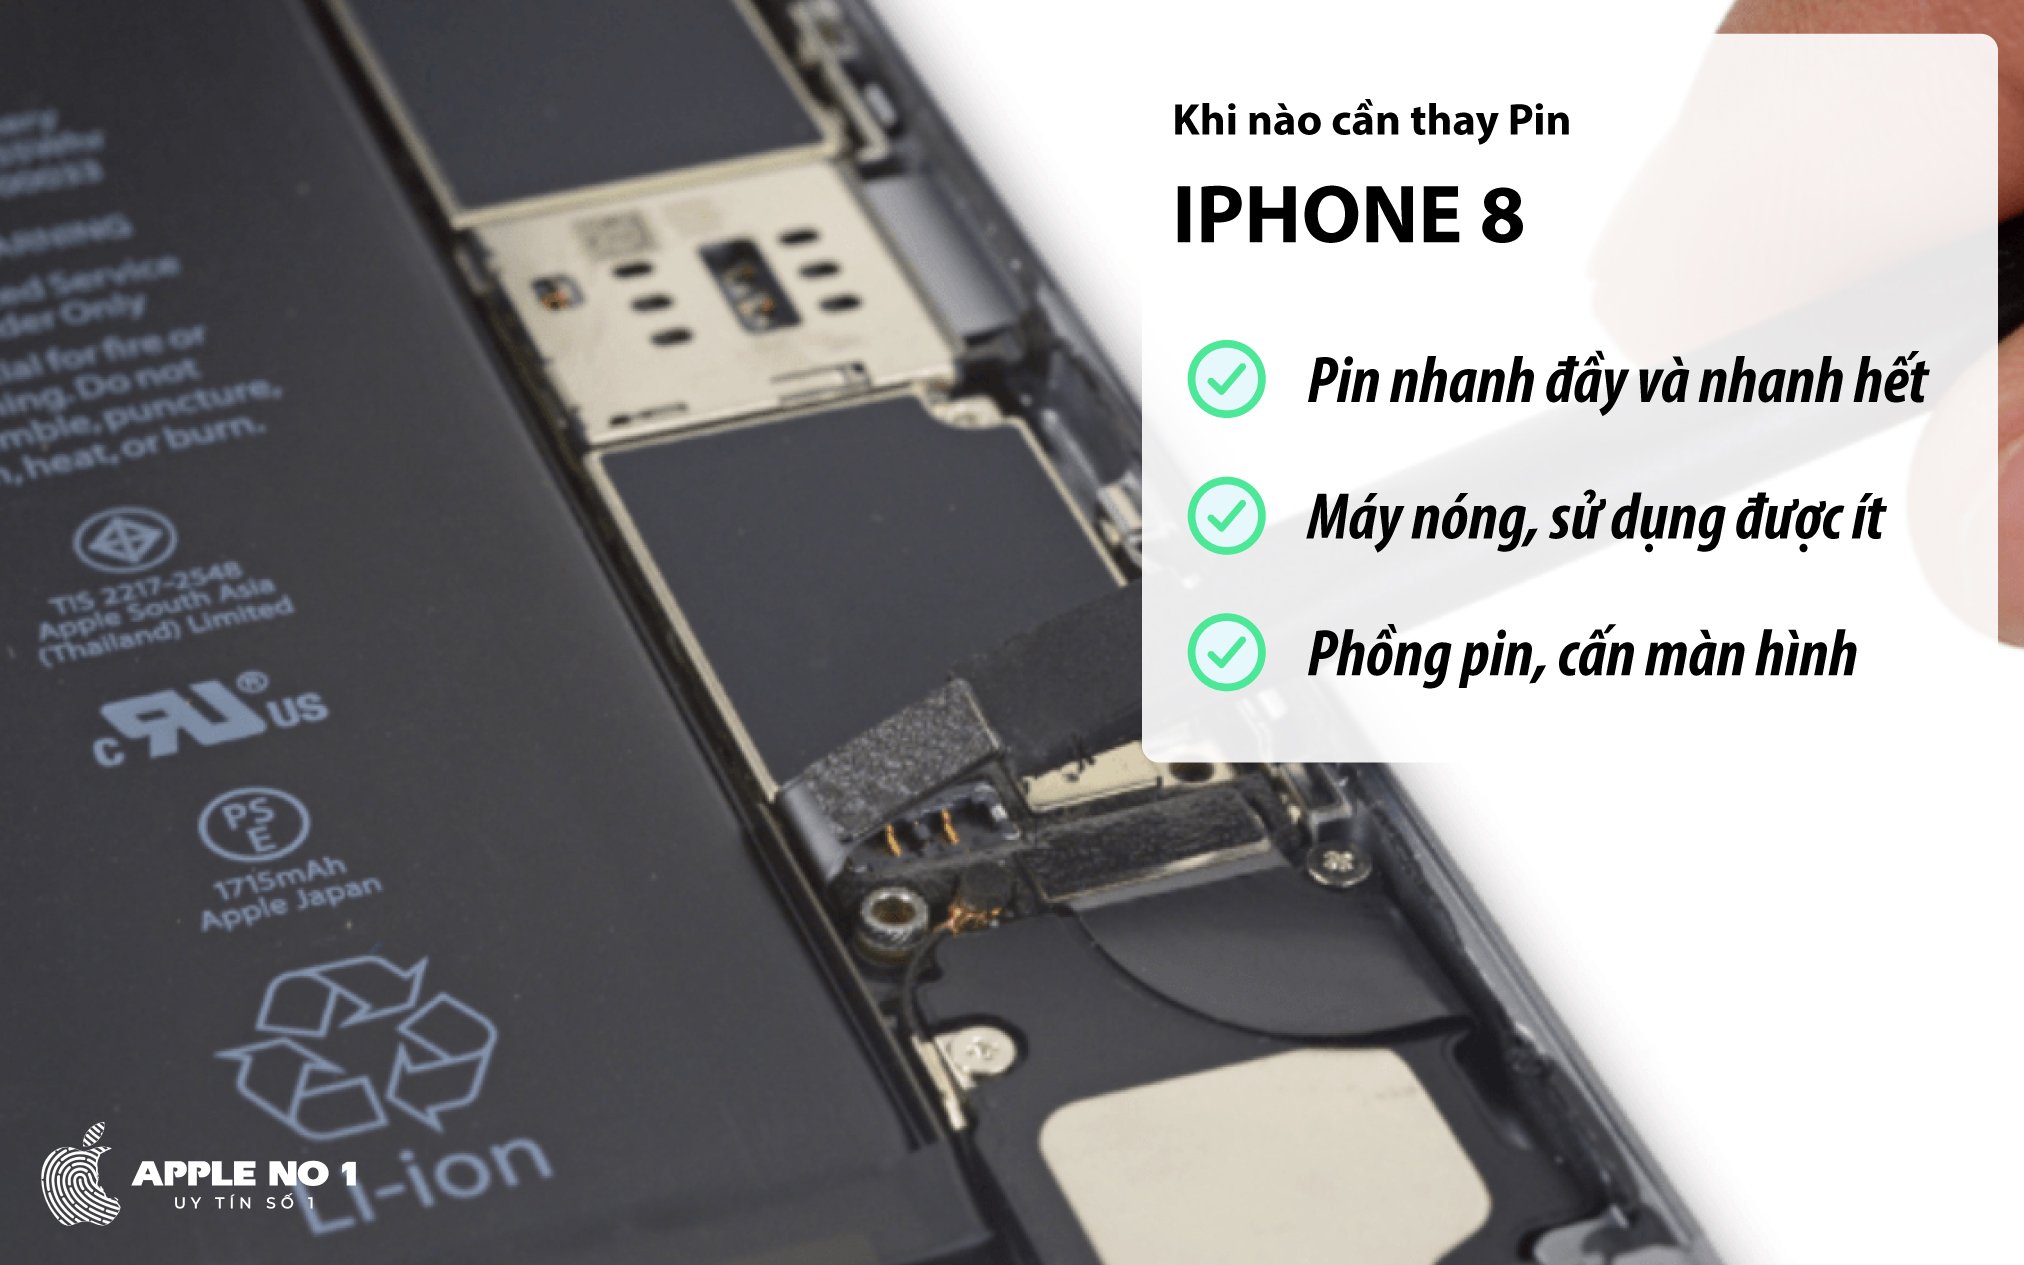 Khi nào cần thay pin cho iPhone 8?